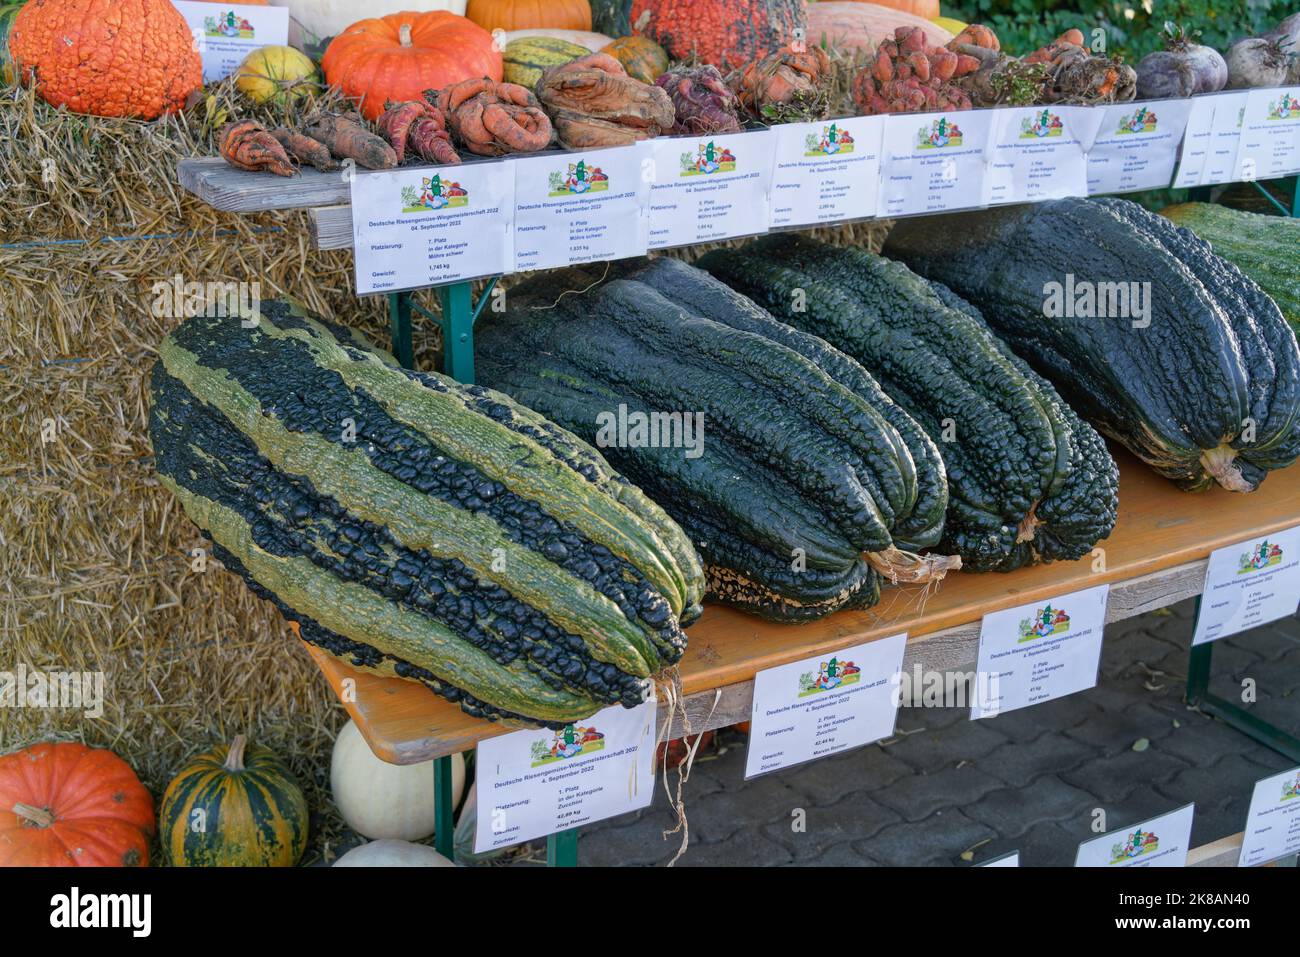 Herbstmarkt auf dem Spargelhof in Klaistow, Kürbismarkt, Bauernhof, Banque D'Images